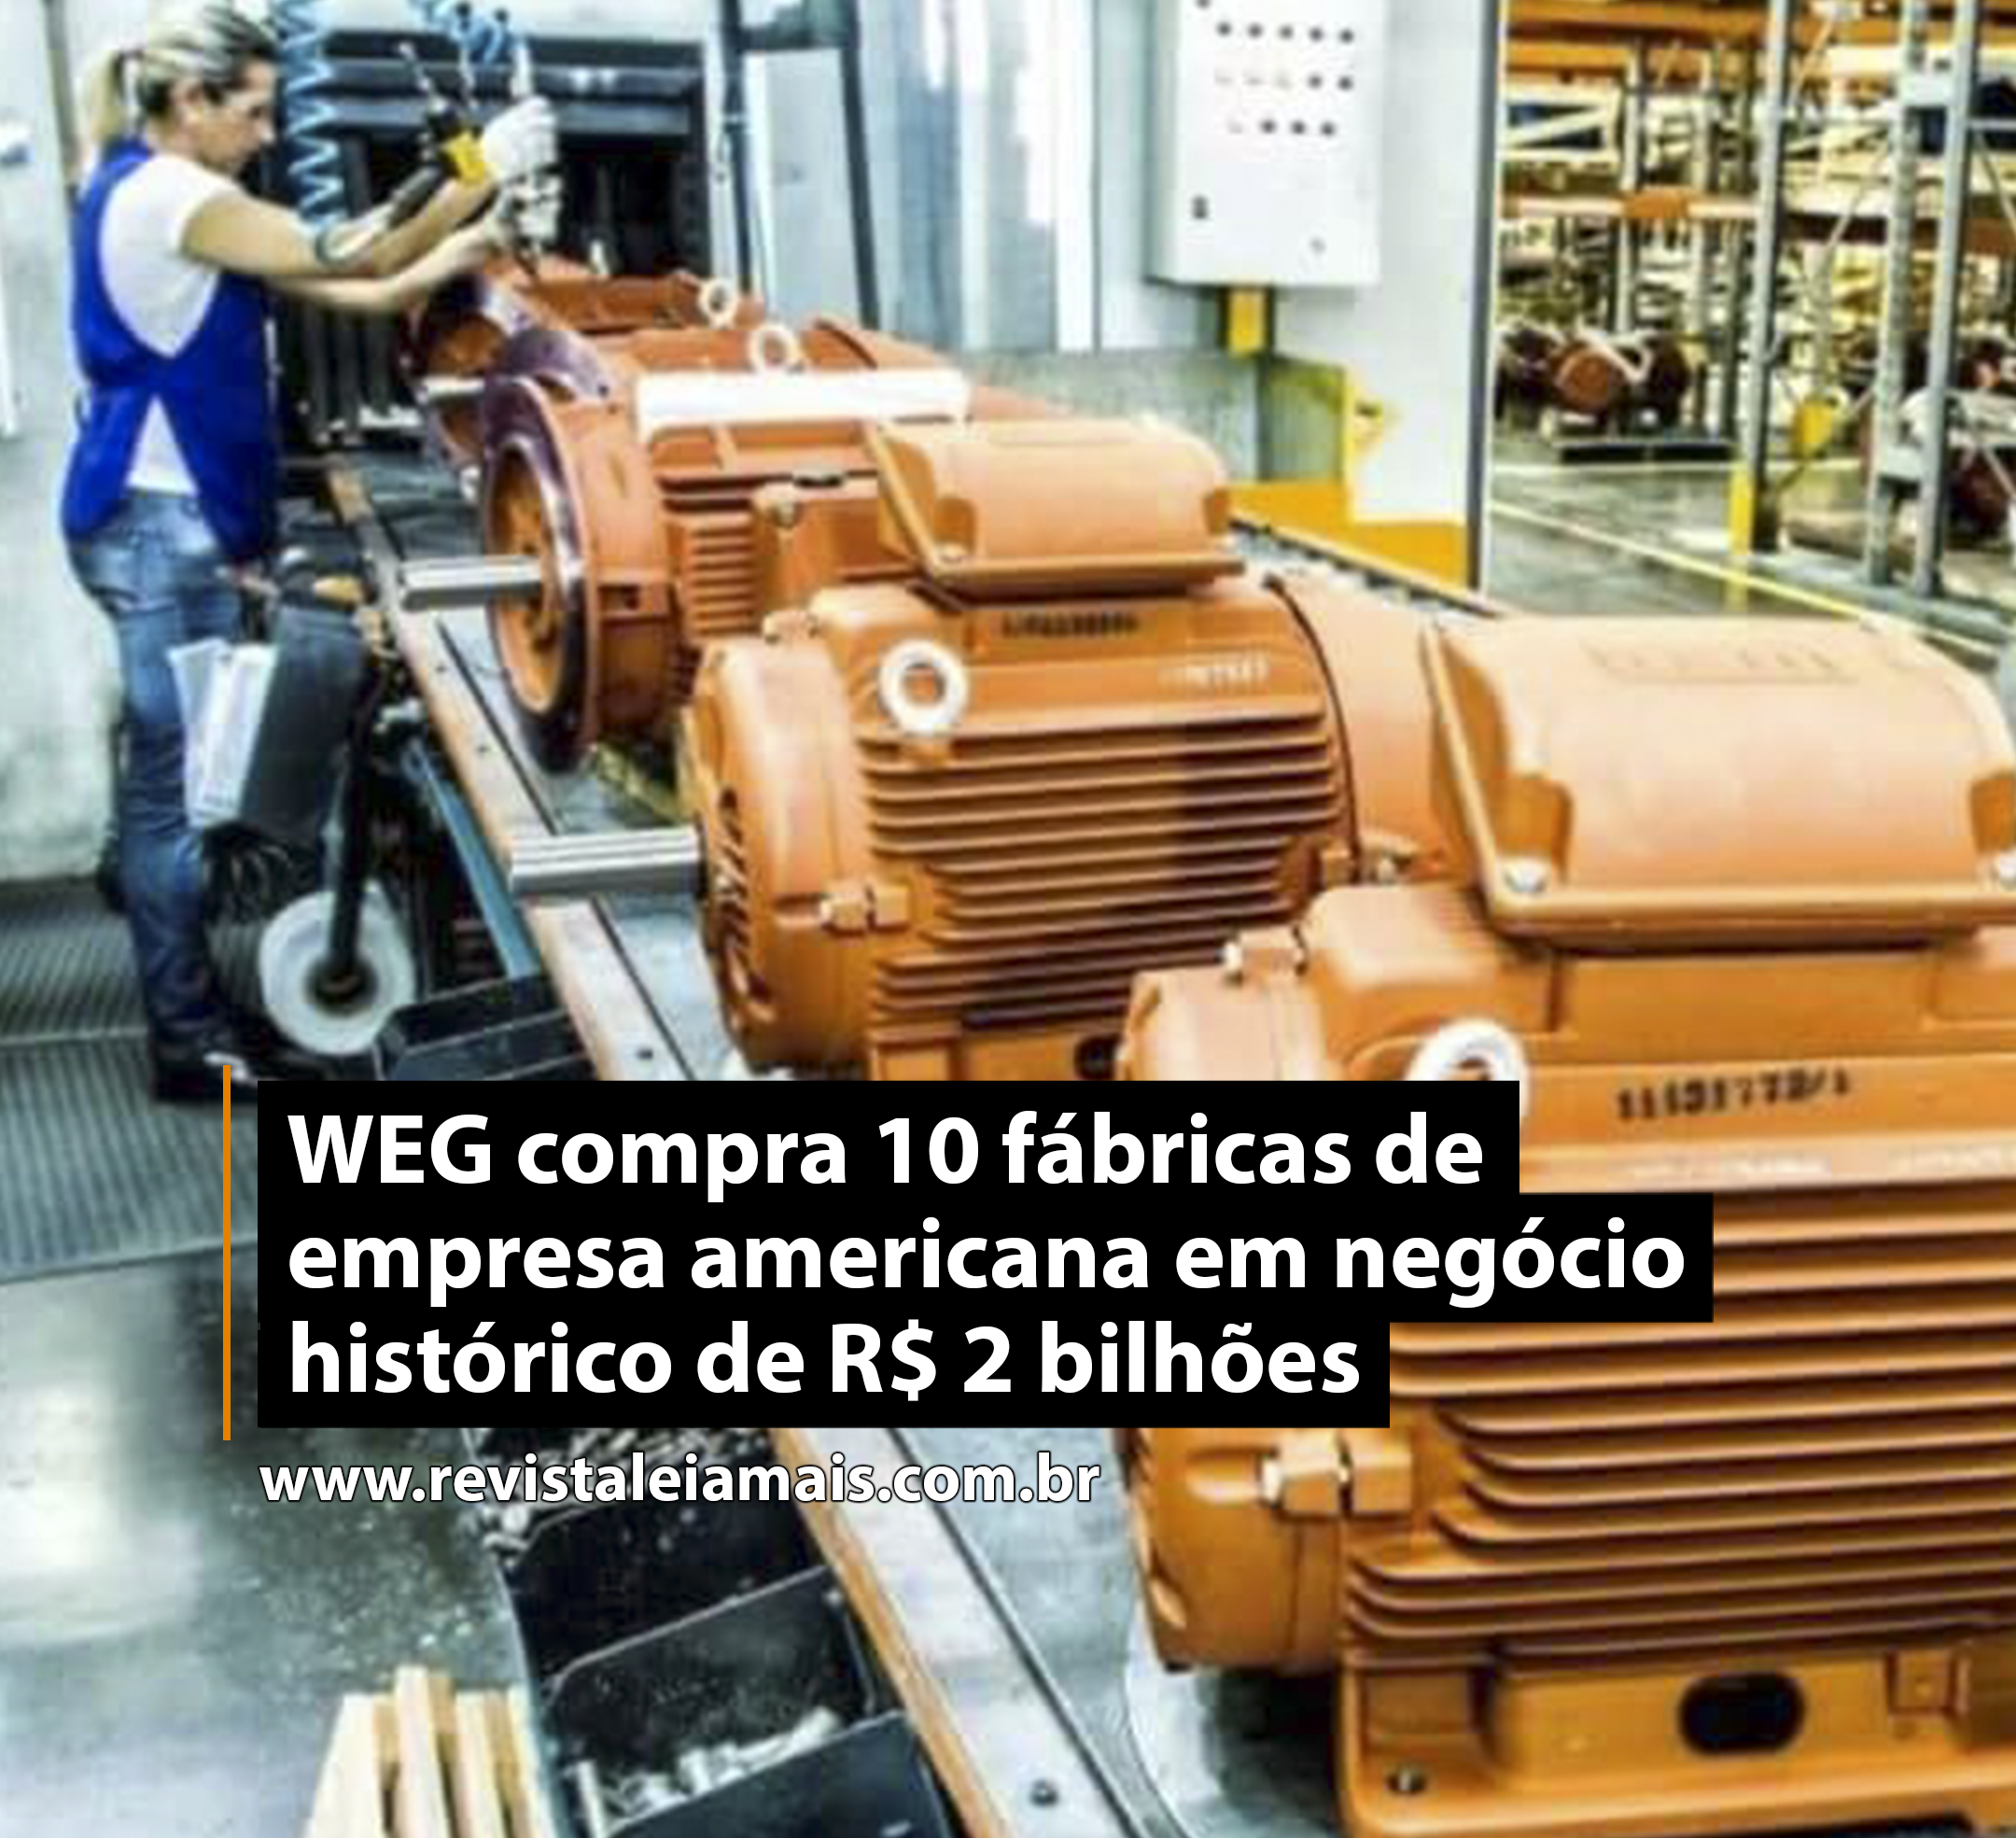 WEG compra 10 fábricas de empresa americana em negócio histórico de R$ 2 bilhões